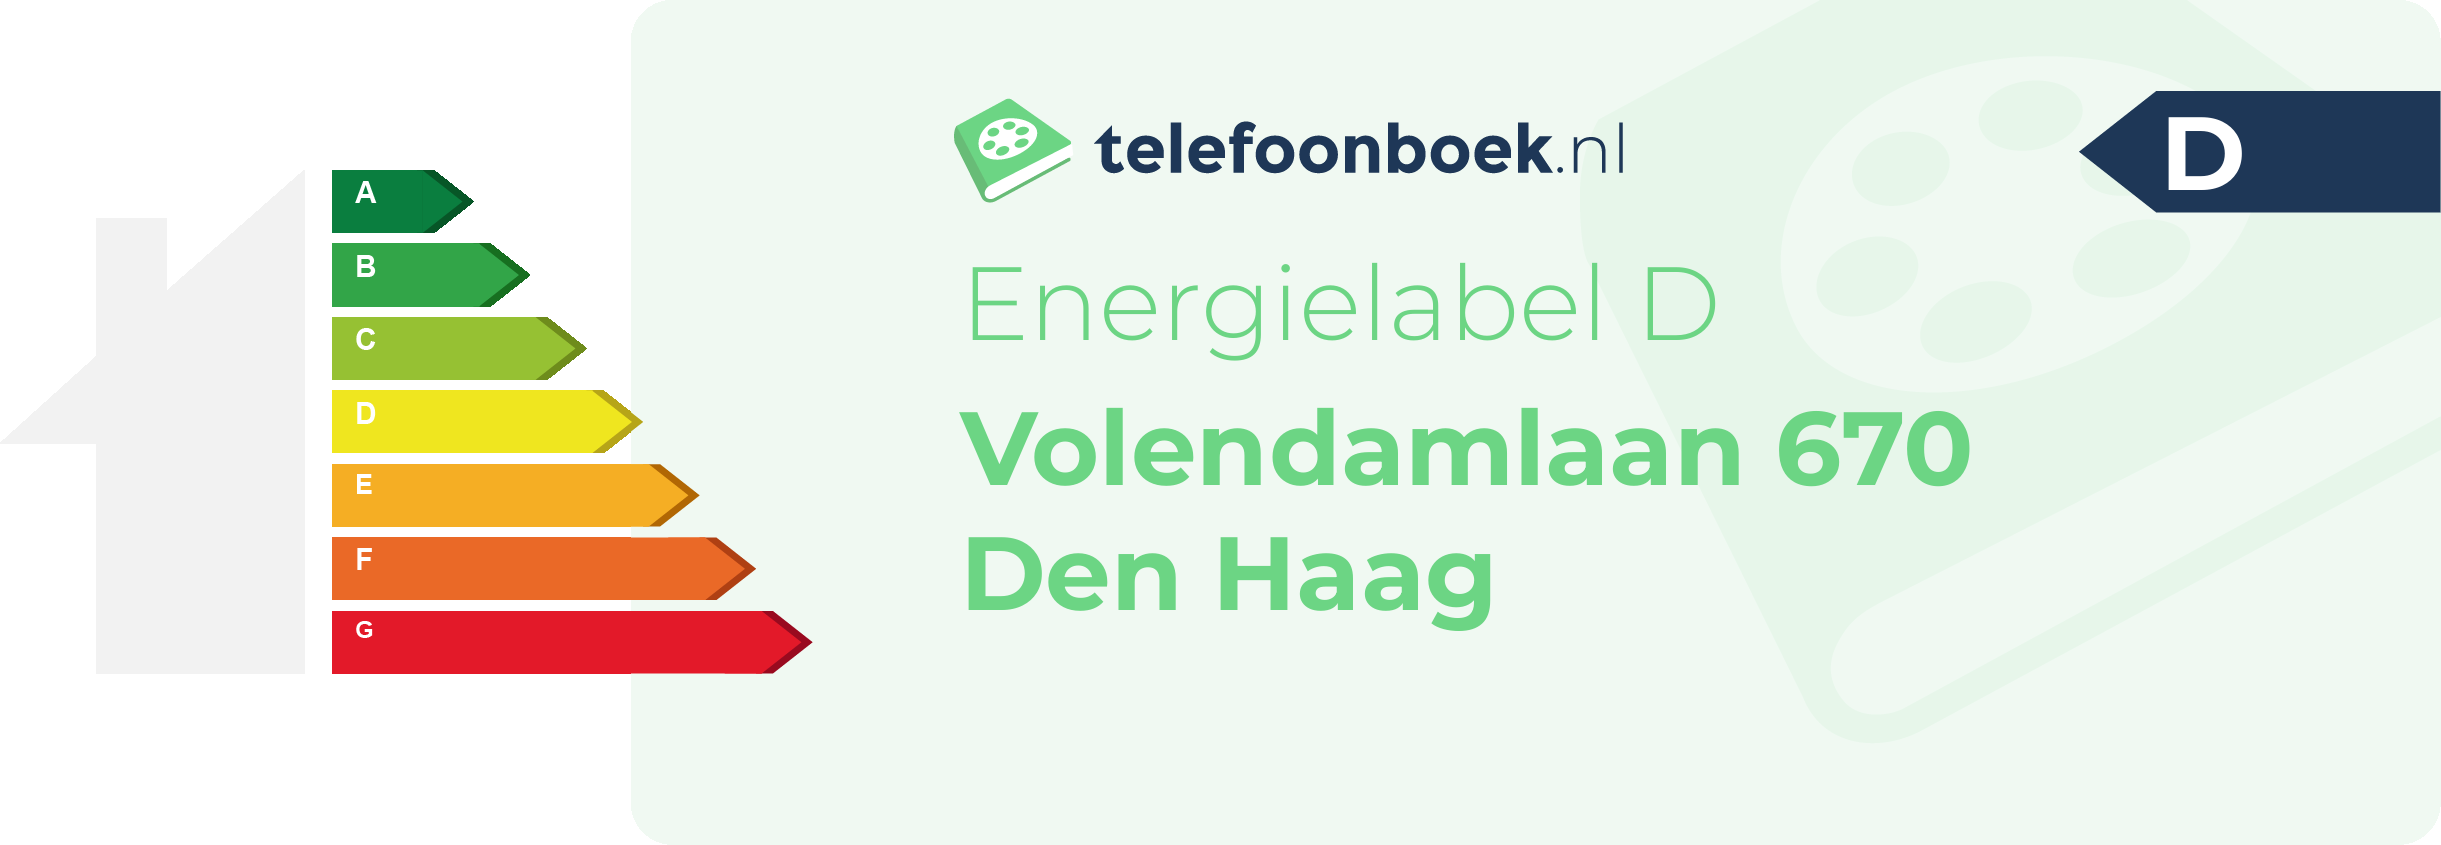 Energielabel Volendamlaan 670 Den Haag